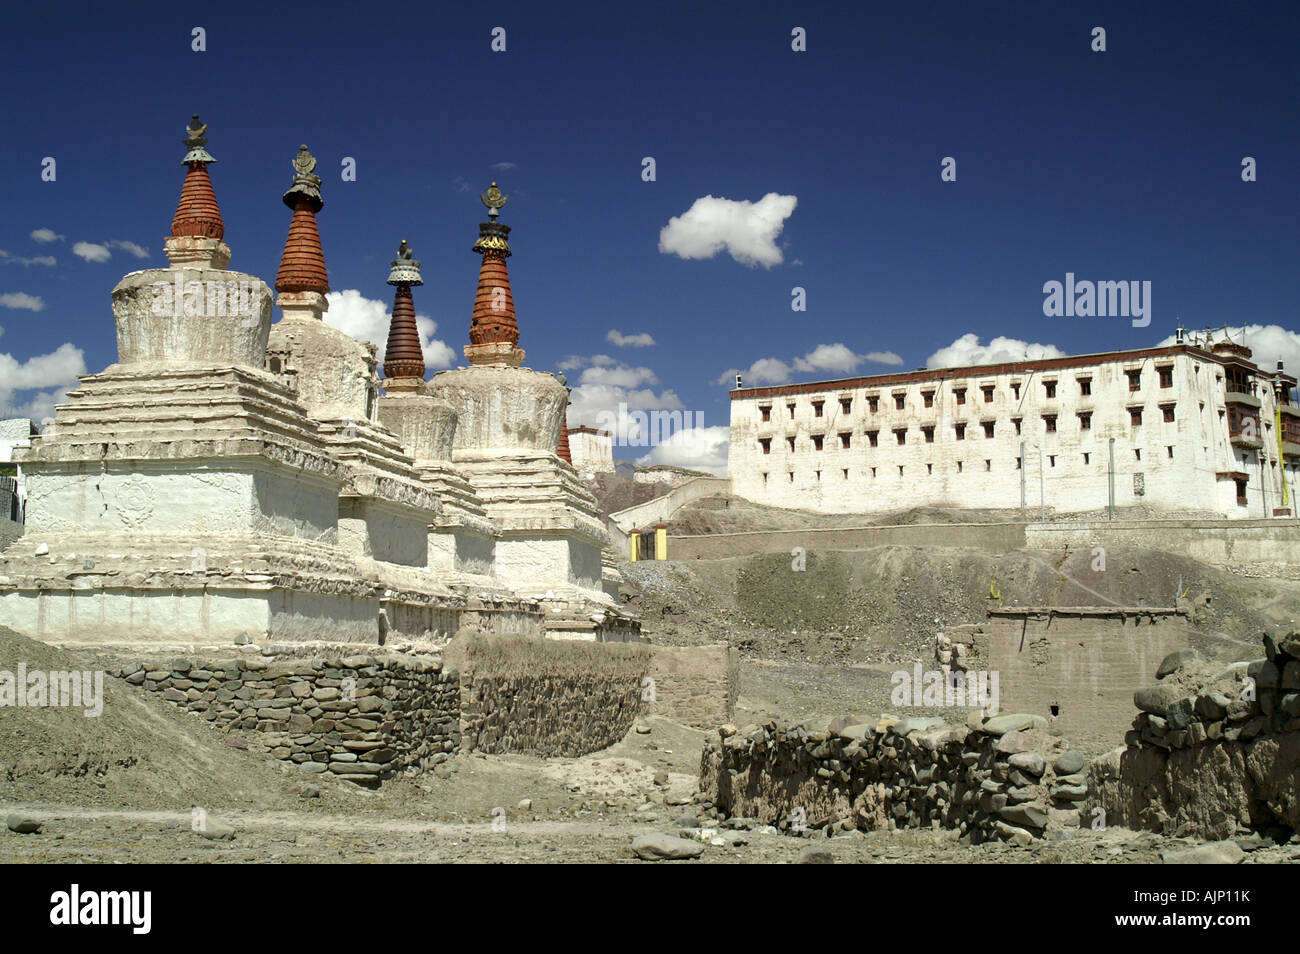 Alignés stupas bouddhistes tibétains blanc de sanctuaires et palais royal de Stok, Ladakh, Inde. Banque D'Images